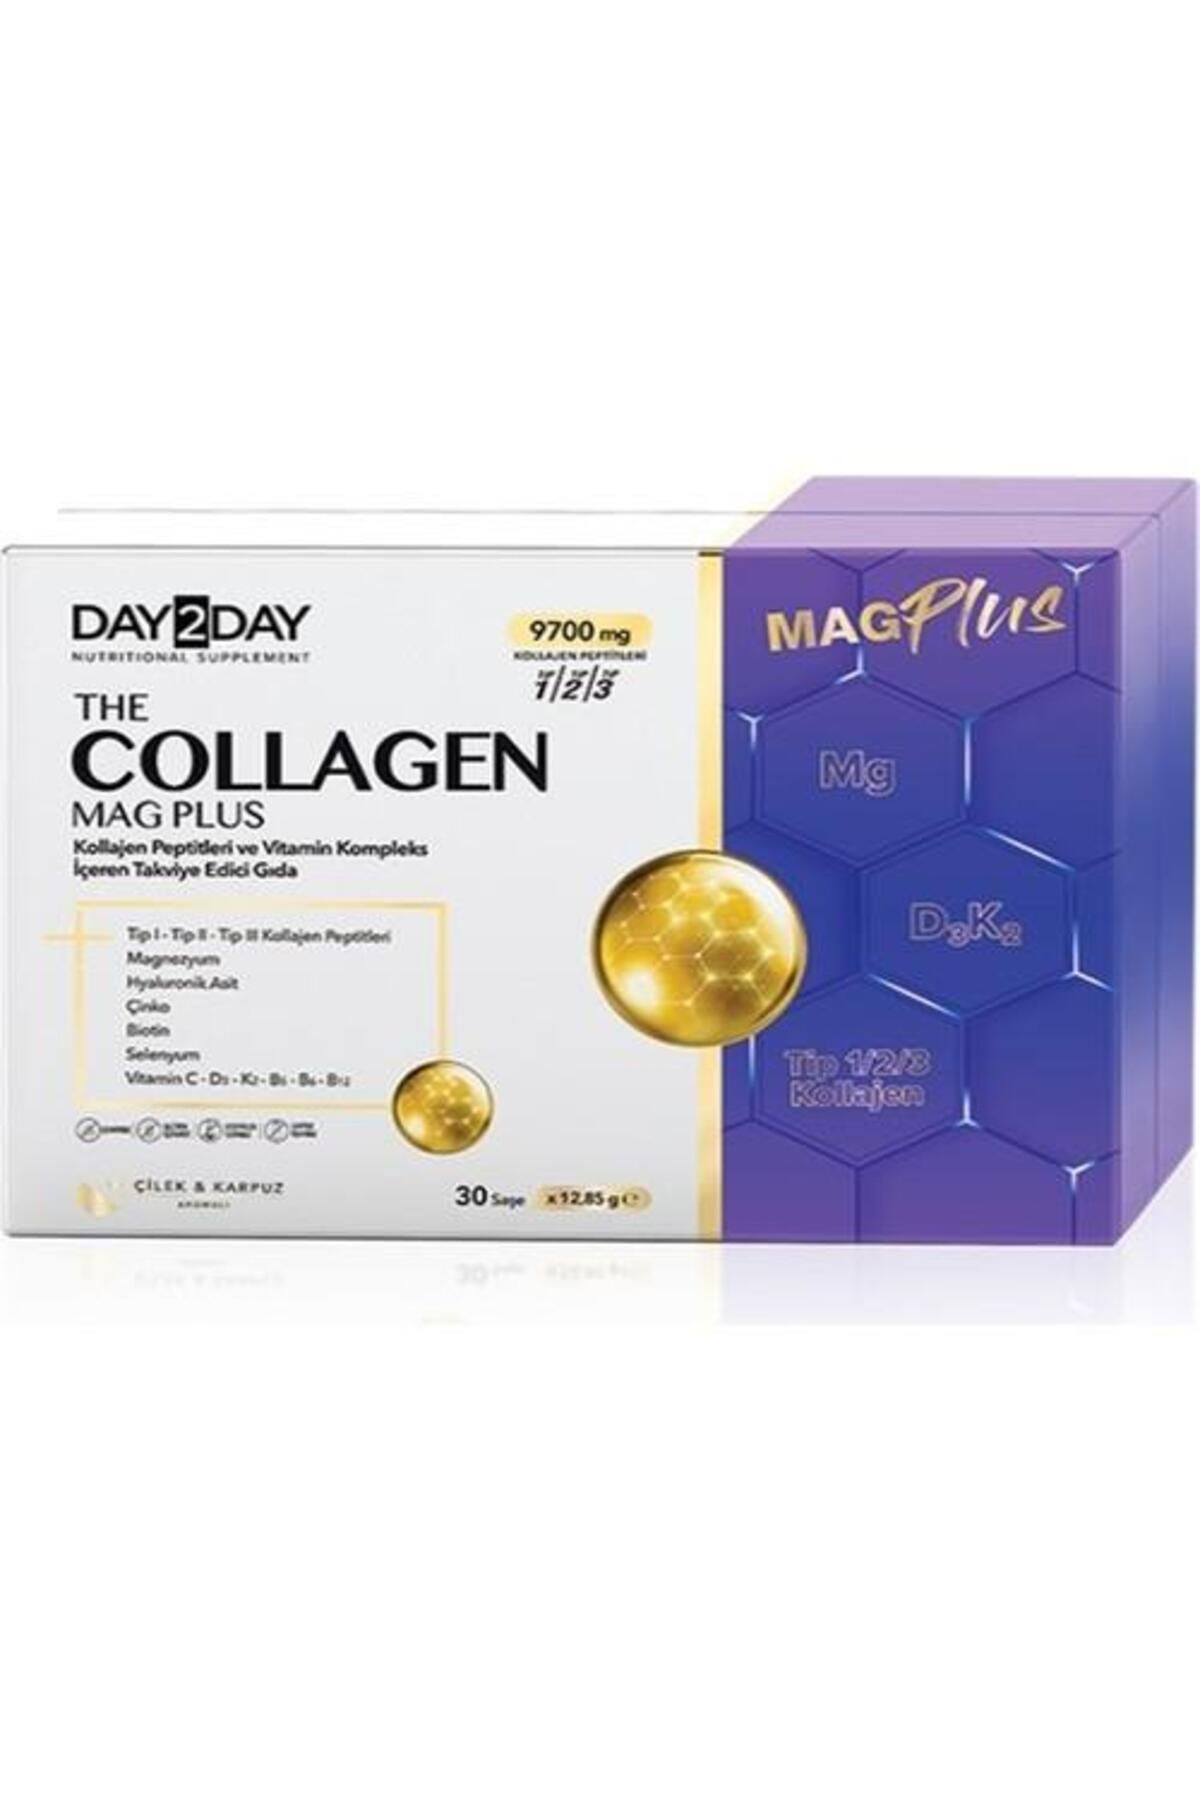 DAY2DAY Collagen Mag Plus 9.700 mg 30 Saşe x 12,85 g Tip 1 / Tip 2 / Tip 3 9.700 mg 30 Saşe x 12,